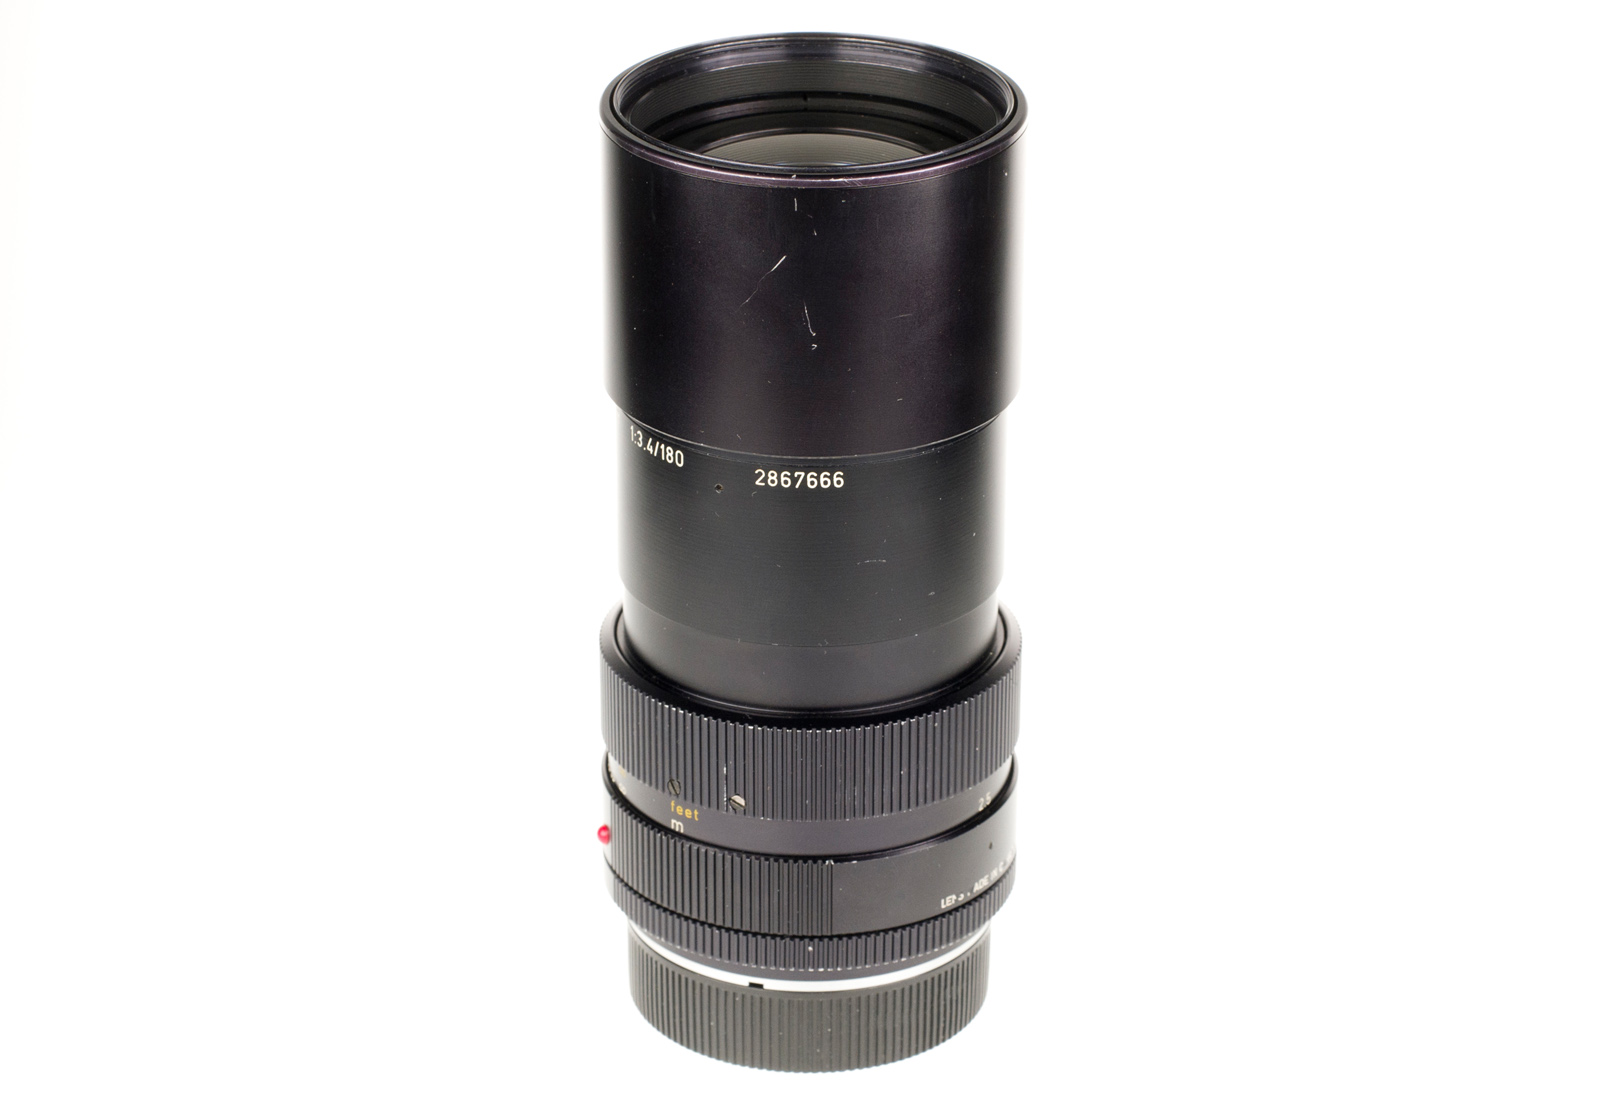 Leica APO-Telyt-R 1:3,4/180mm, black 11240